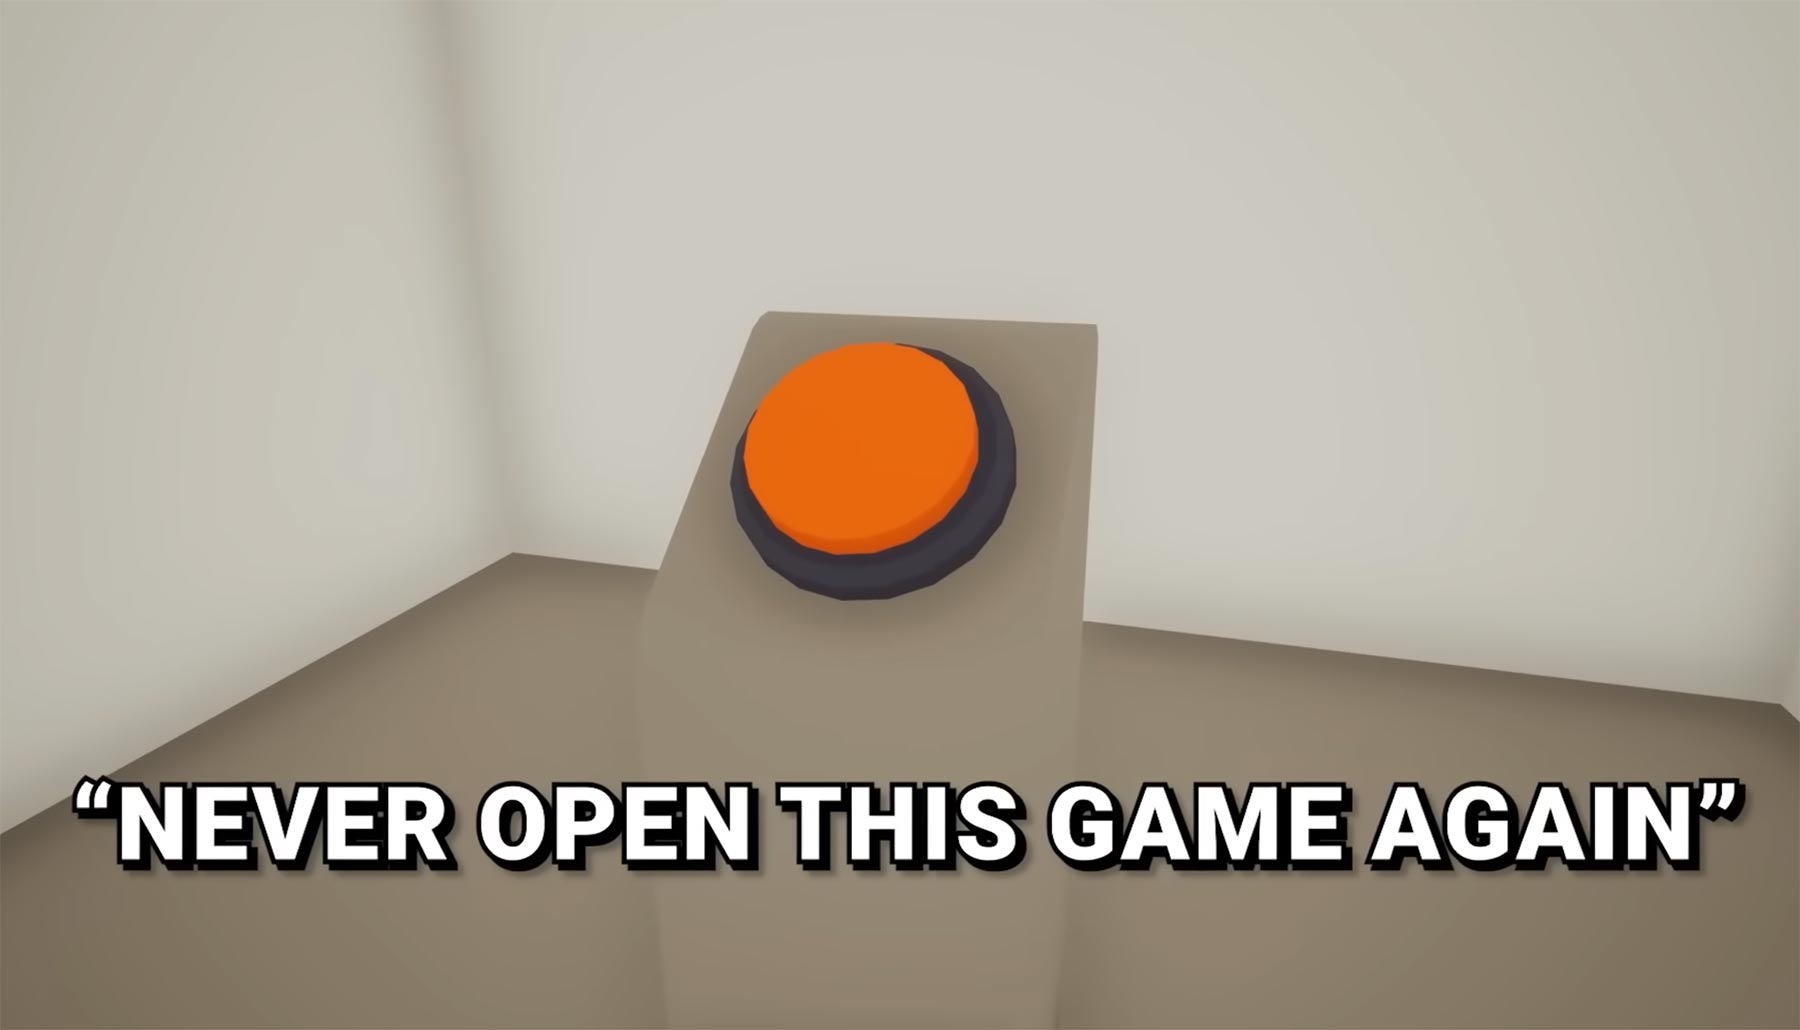 Im Spiel „The Corridor“ soll man den Knopf nicht drücken